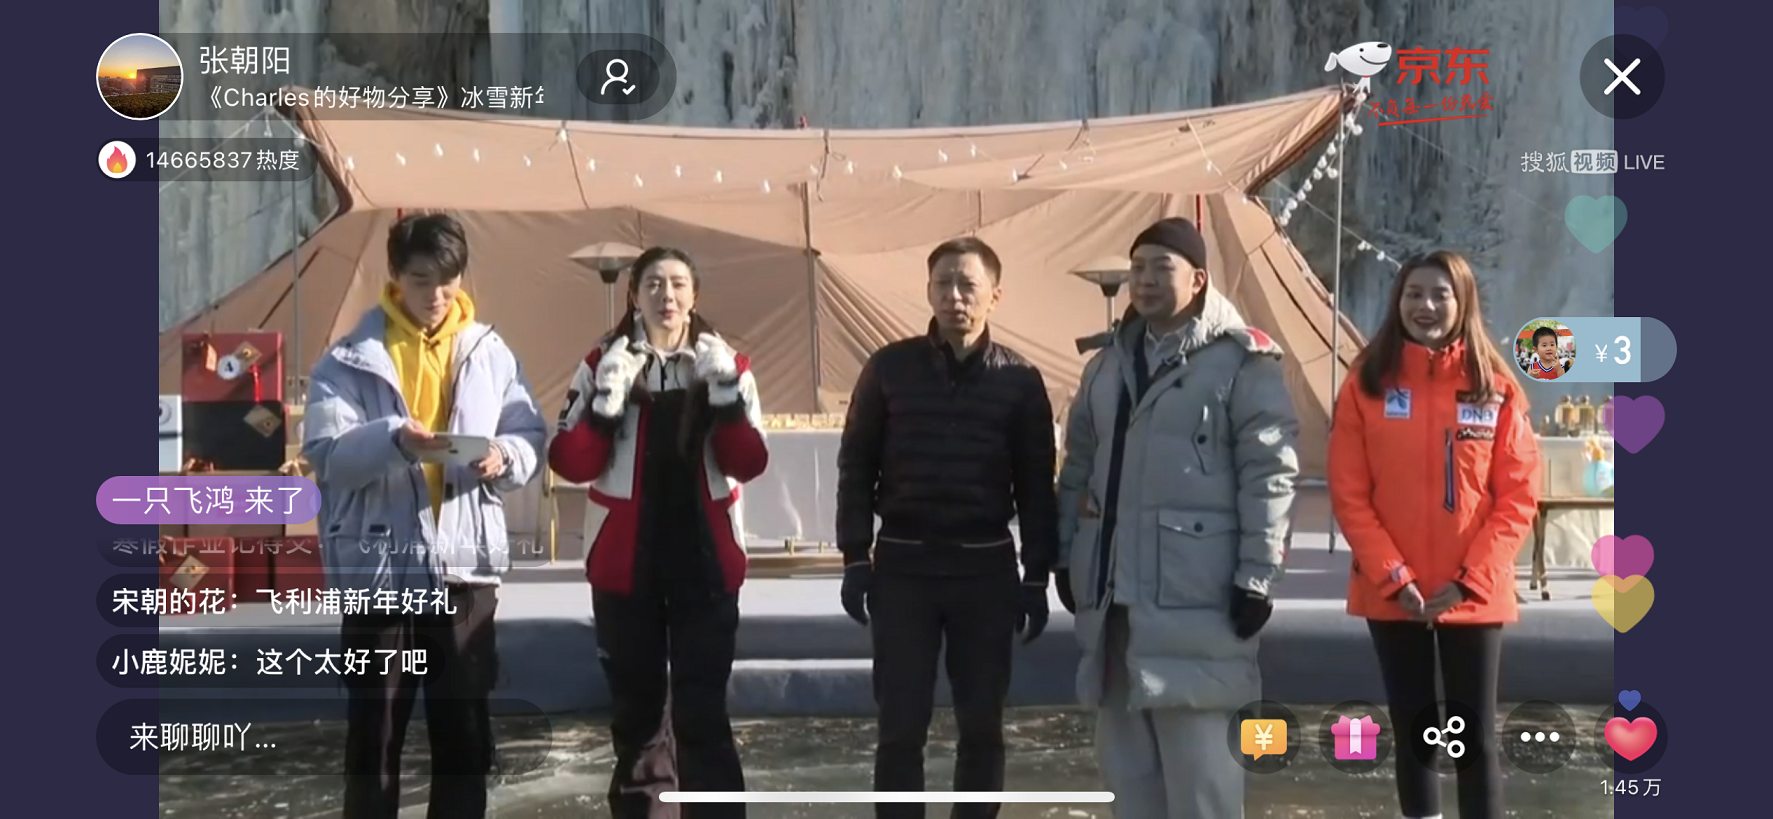 搜狐视频直播开启沉浸式场景化真人秀直播  BOSS与明星秀出冰雪新场景